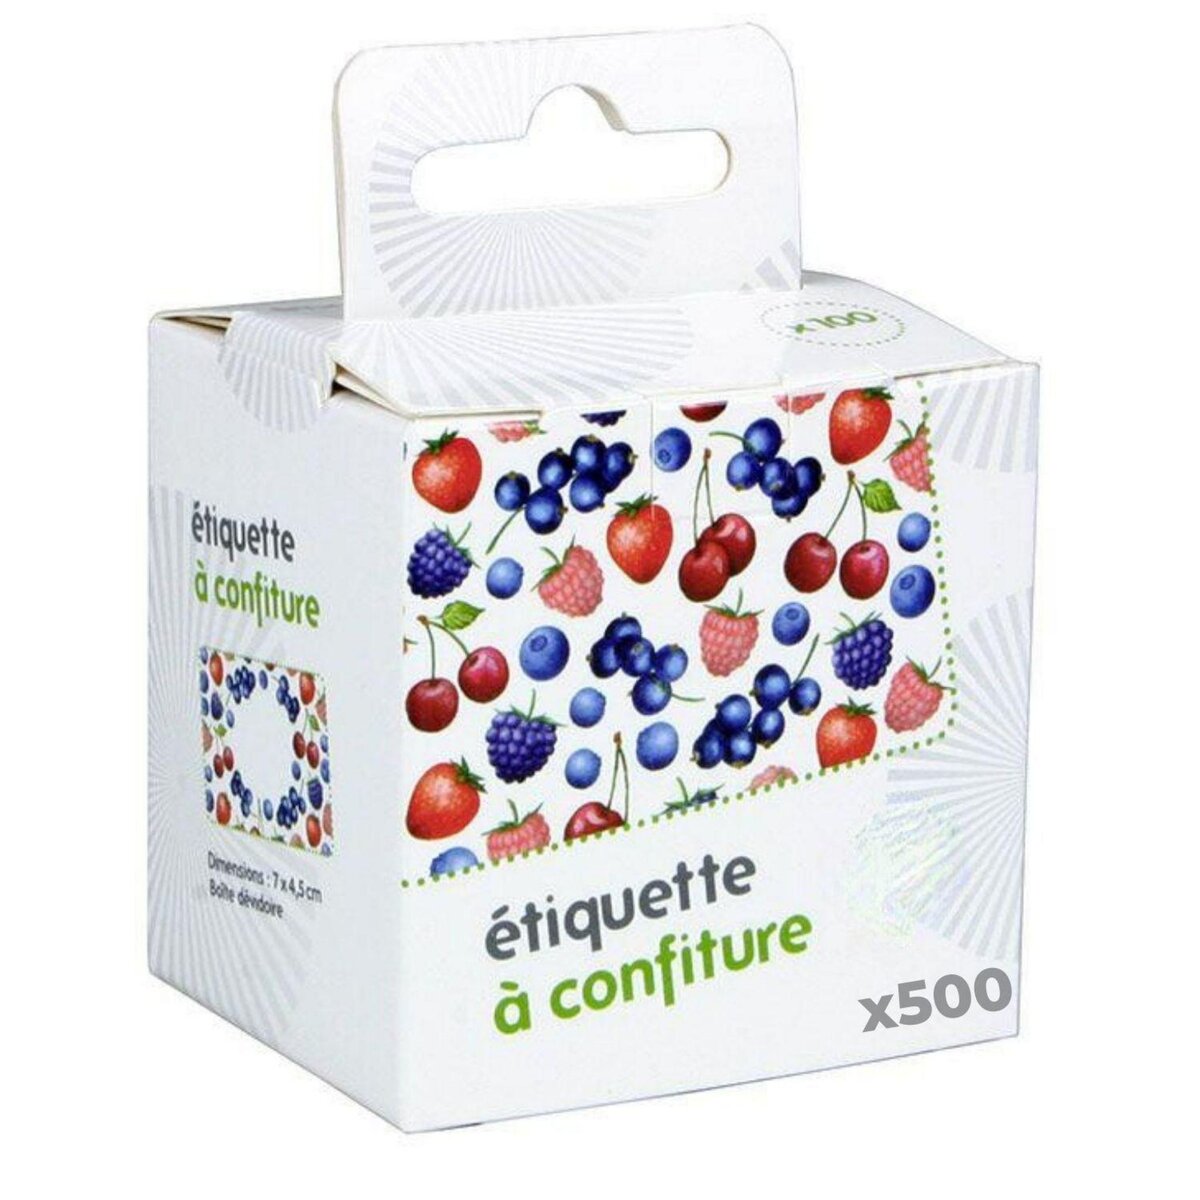 Chevalier Diffusion 500 étiquettes à confiture - Motifs fruits rouges